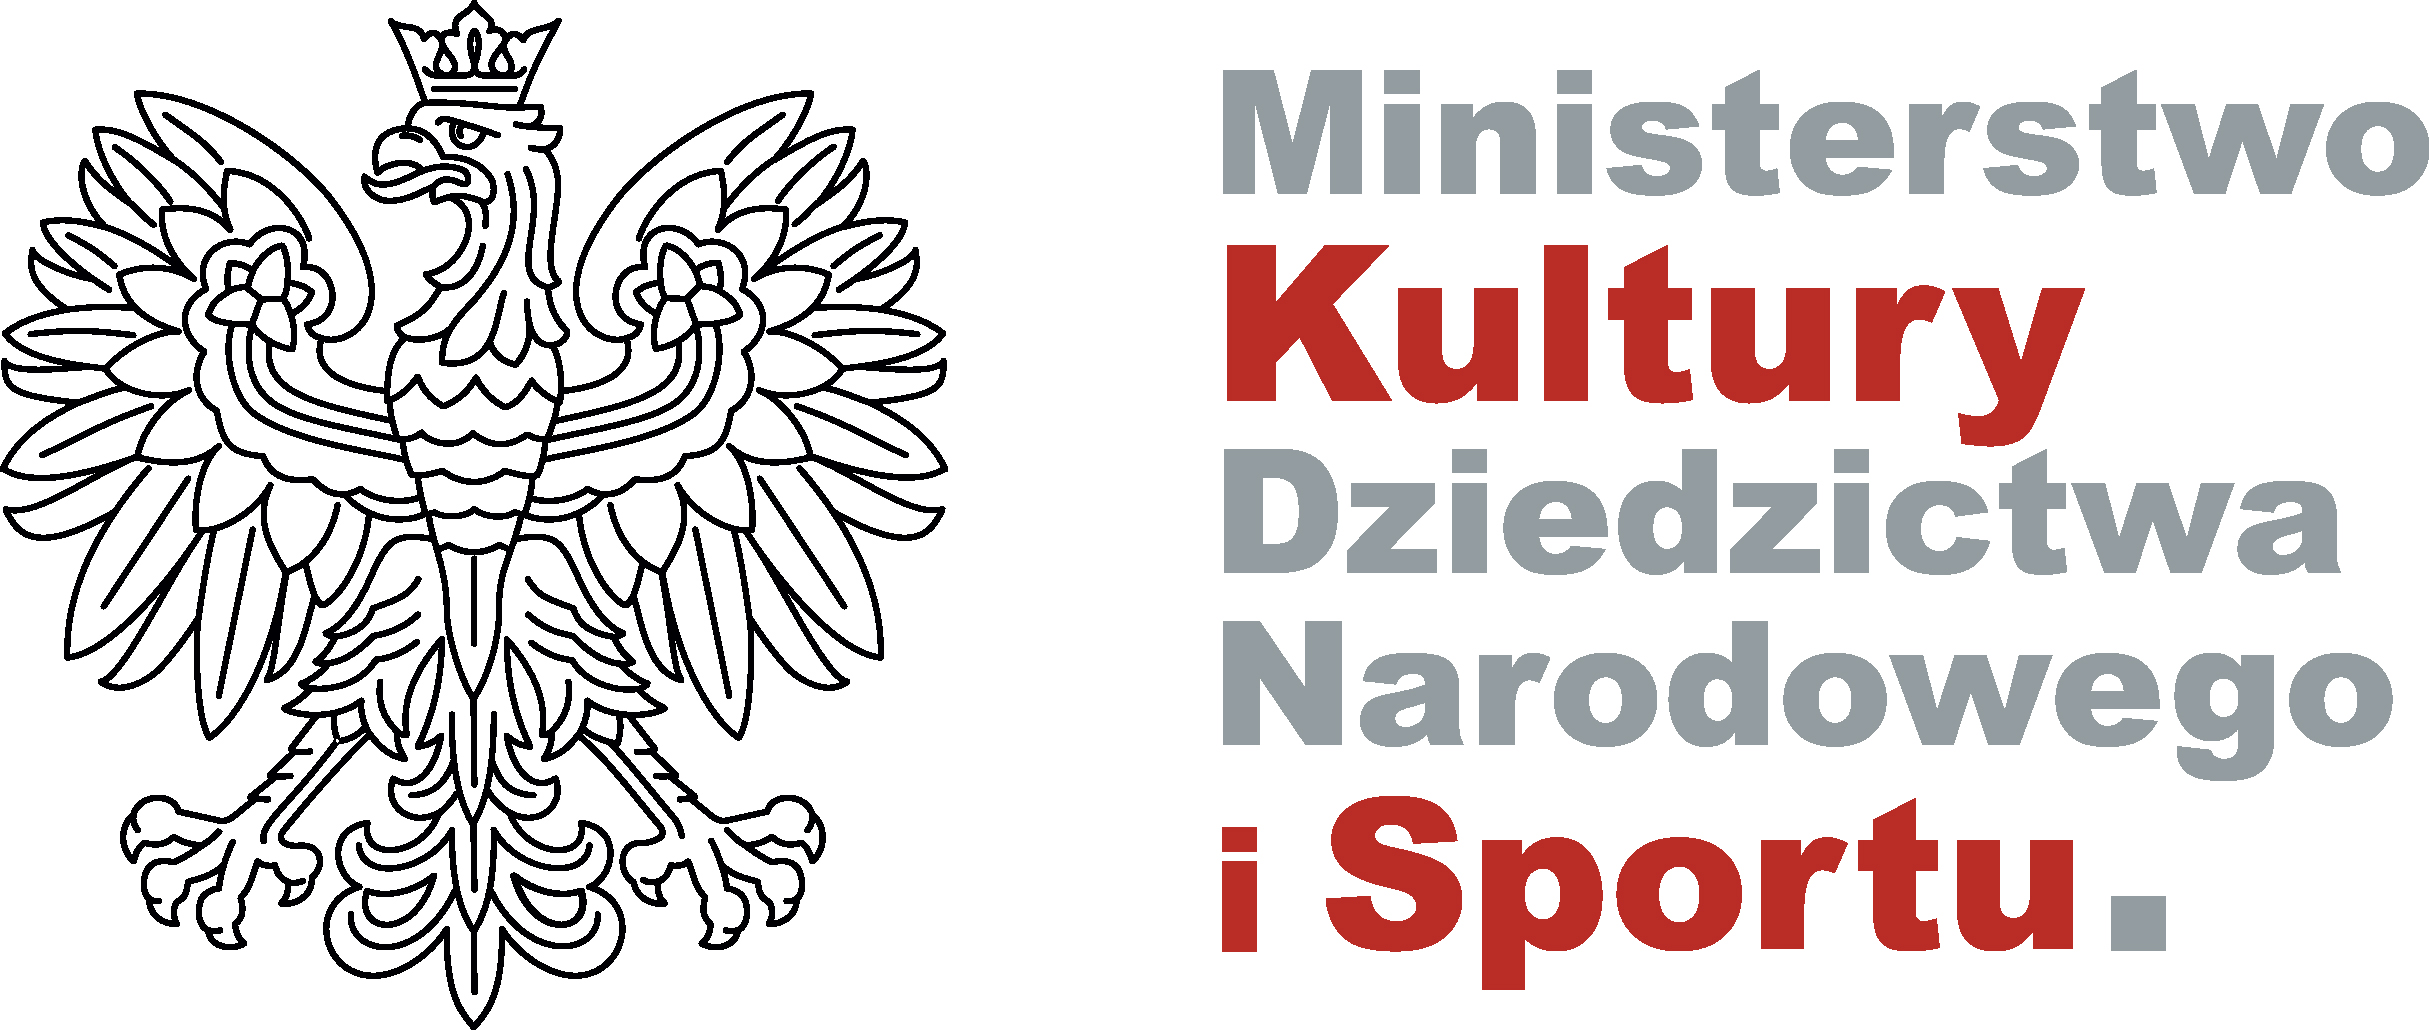 Logo - Ministerstwo Kultury Dziedzictwa Narodowego i Sportu.